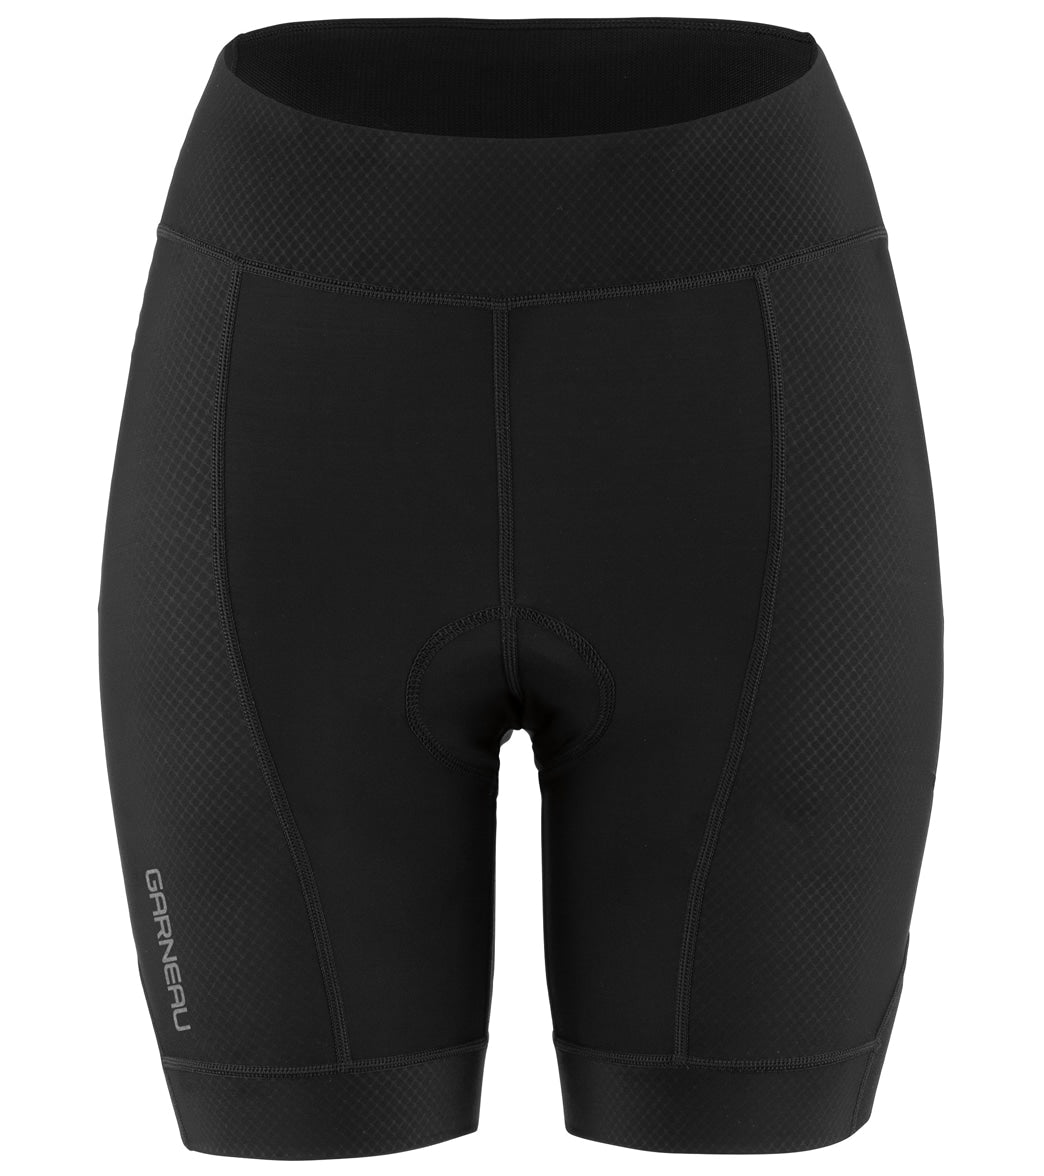 Louis Garneau Women's Neo Power Motion 5.5 Cycling Shorts Black XL